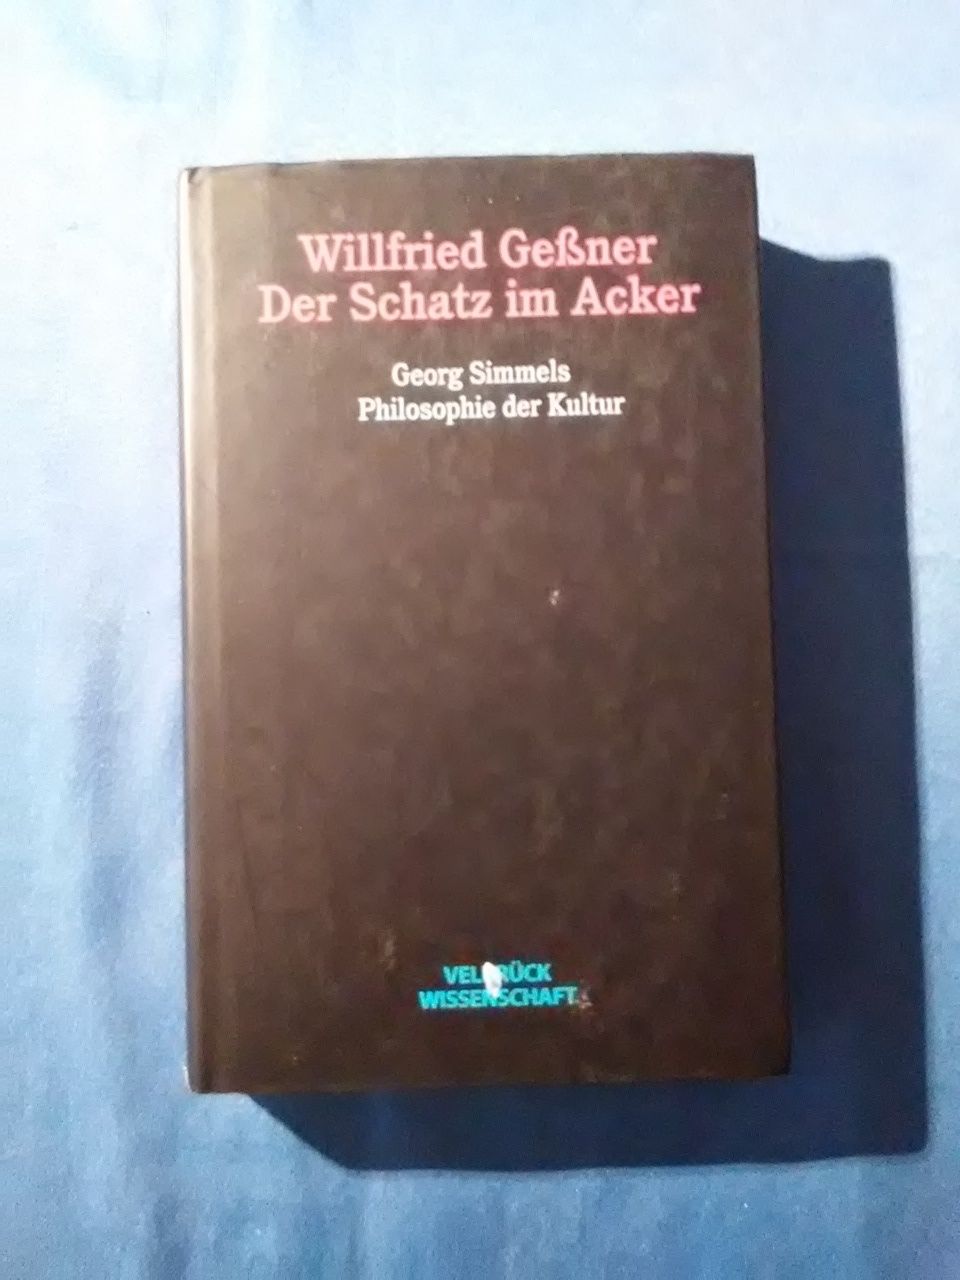 Der Schatz im Acker : Georg Simmels Philosophie der Kultur. - Geßner, Willfried.